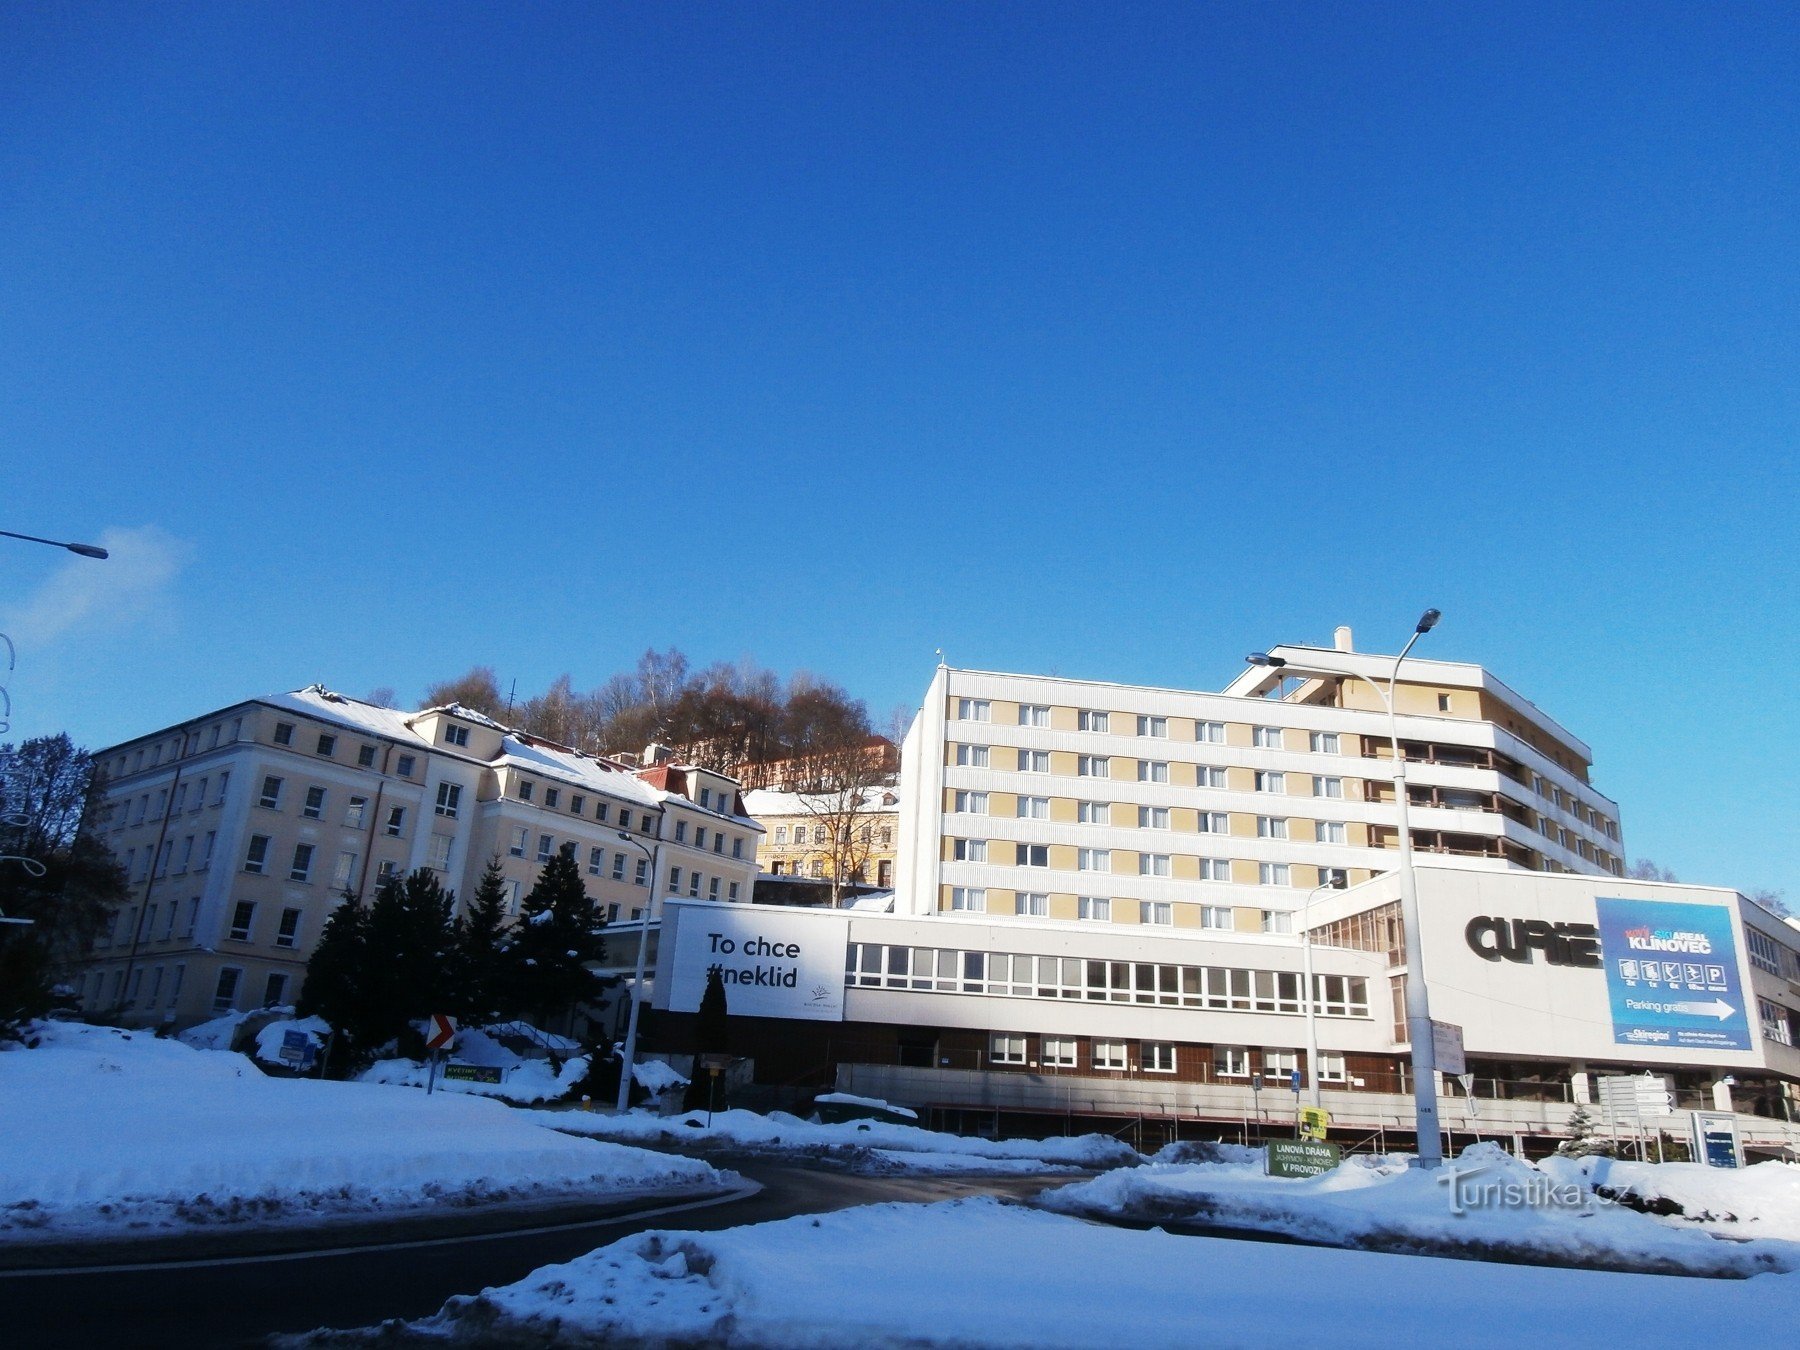 Casa de spa Curie com hotel Praga